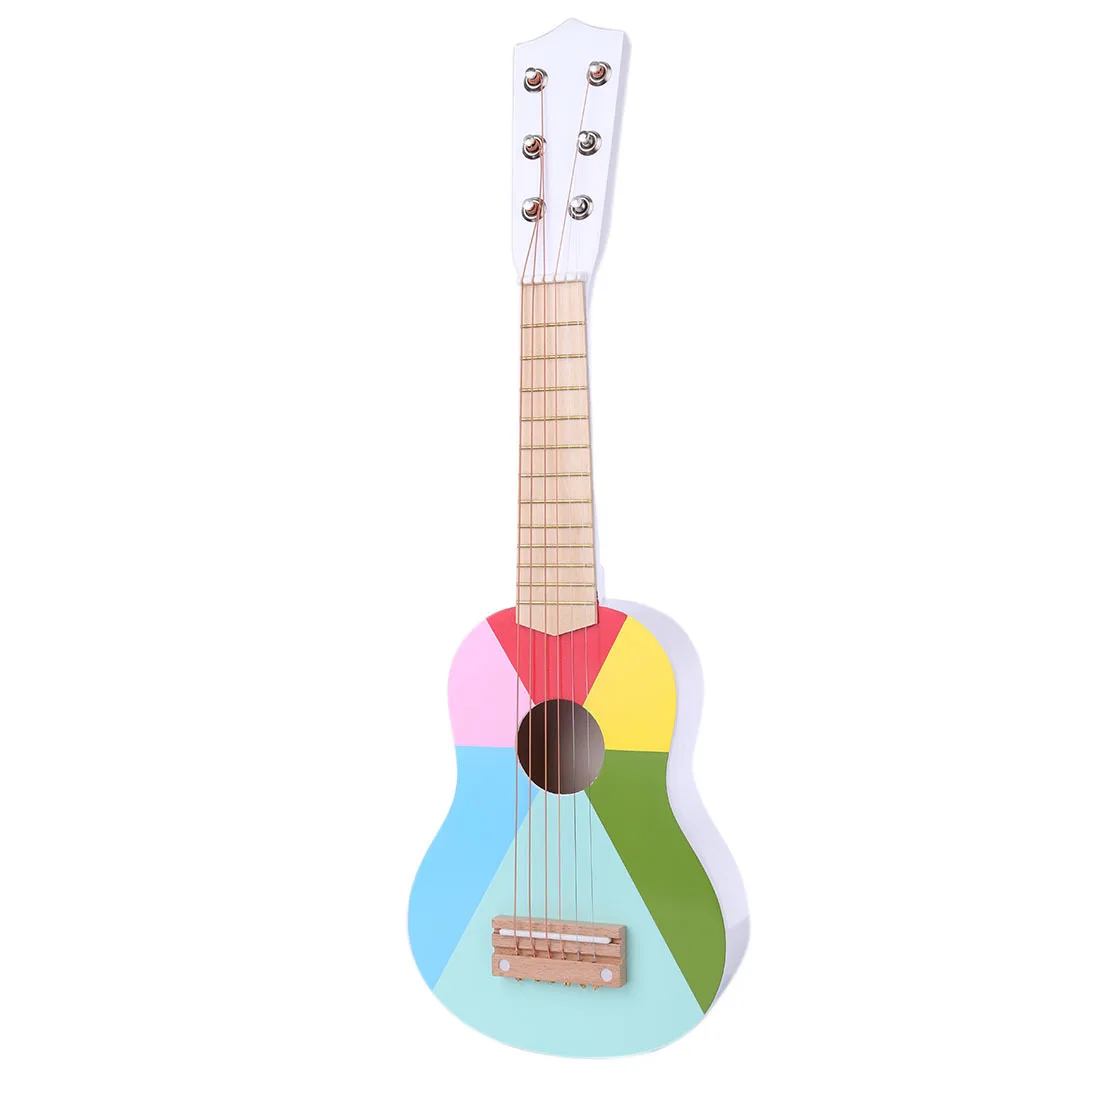 23 дюйма 6 струн музыкальный инструмент гитара подарок для детей-желтая Зебра/разные цвета